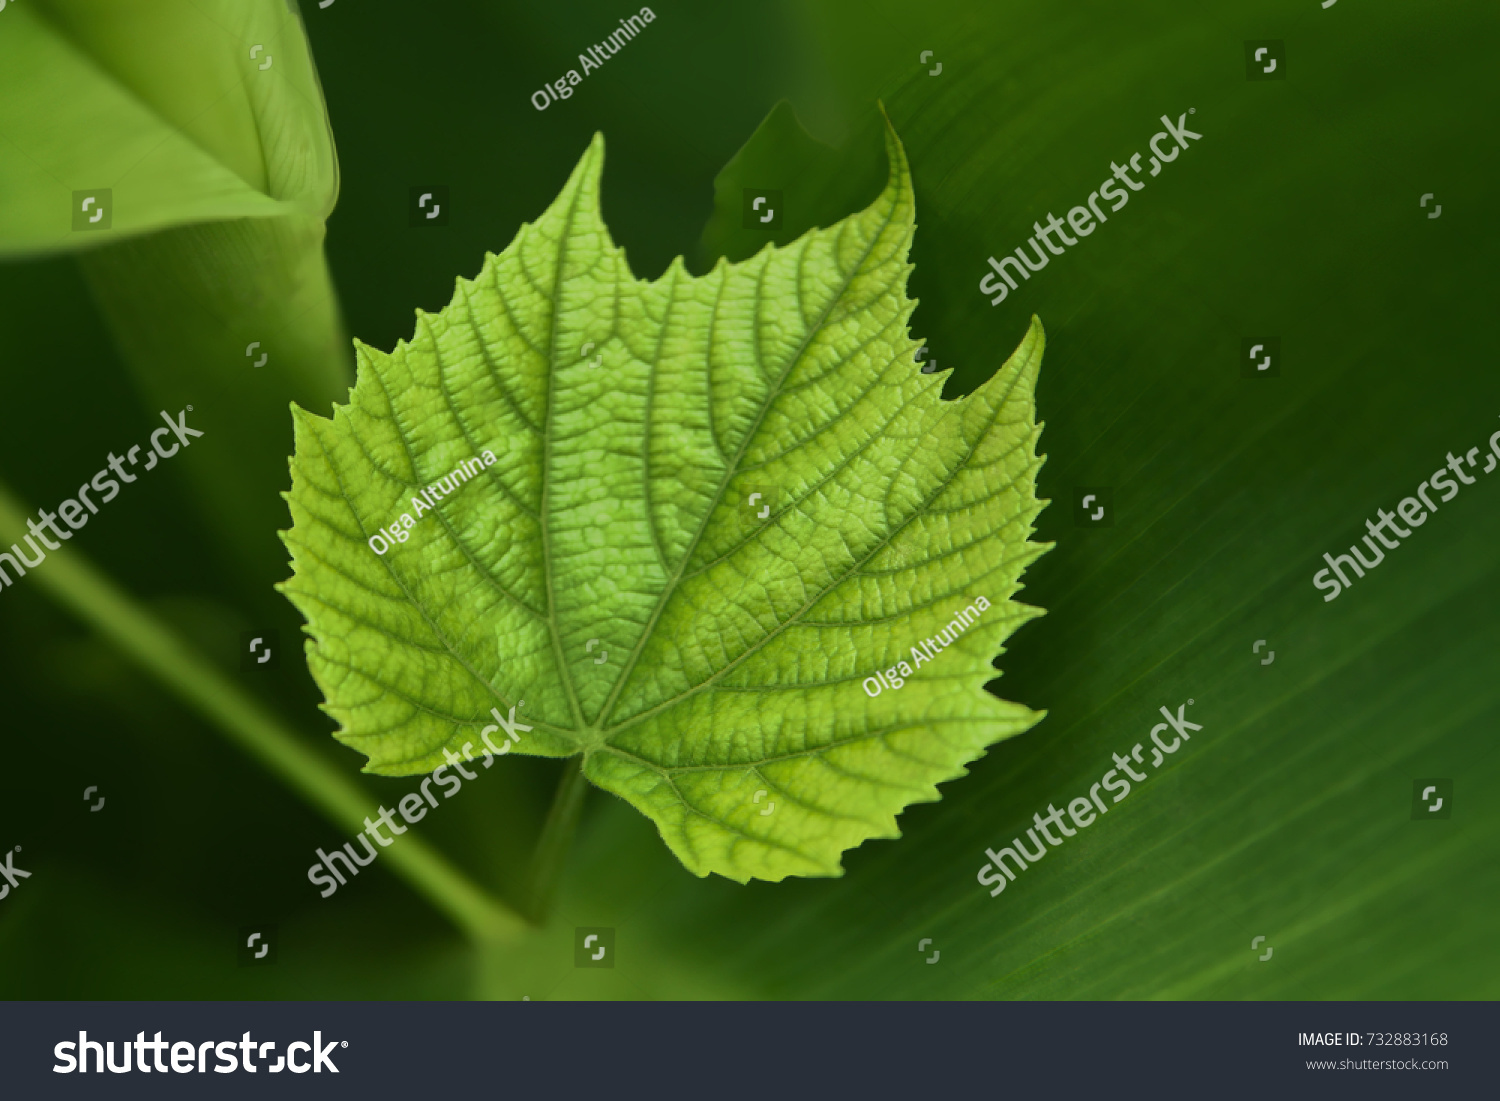 A green vine grape leaf close-up in a blurry foliage background #732883168